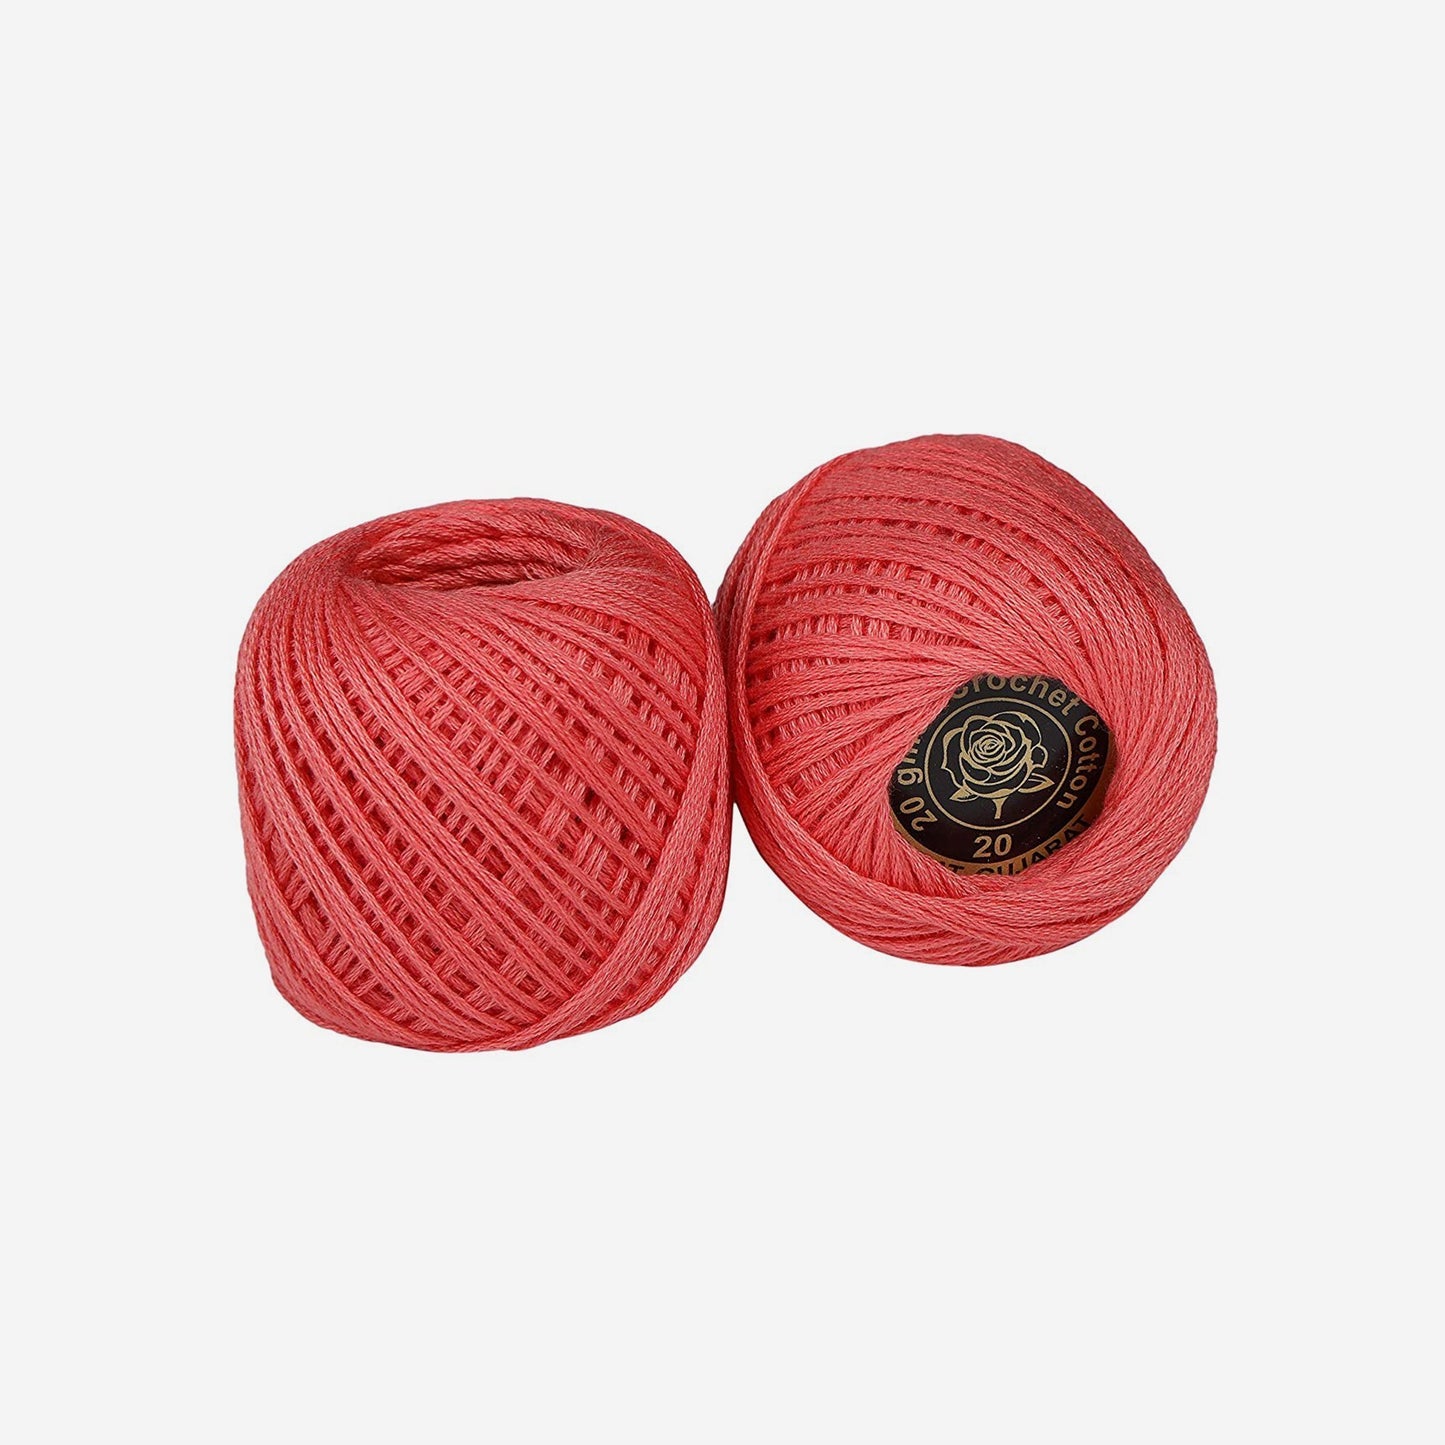 Hand-crochet hoops (Variation 10)